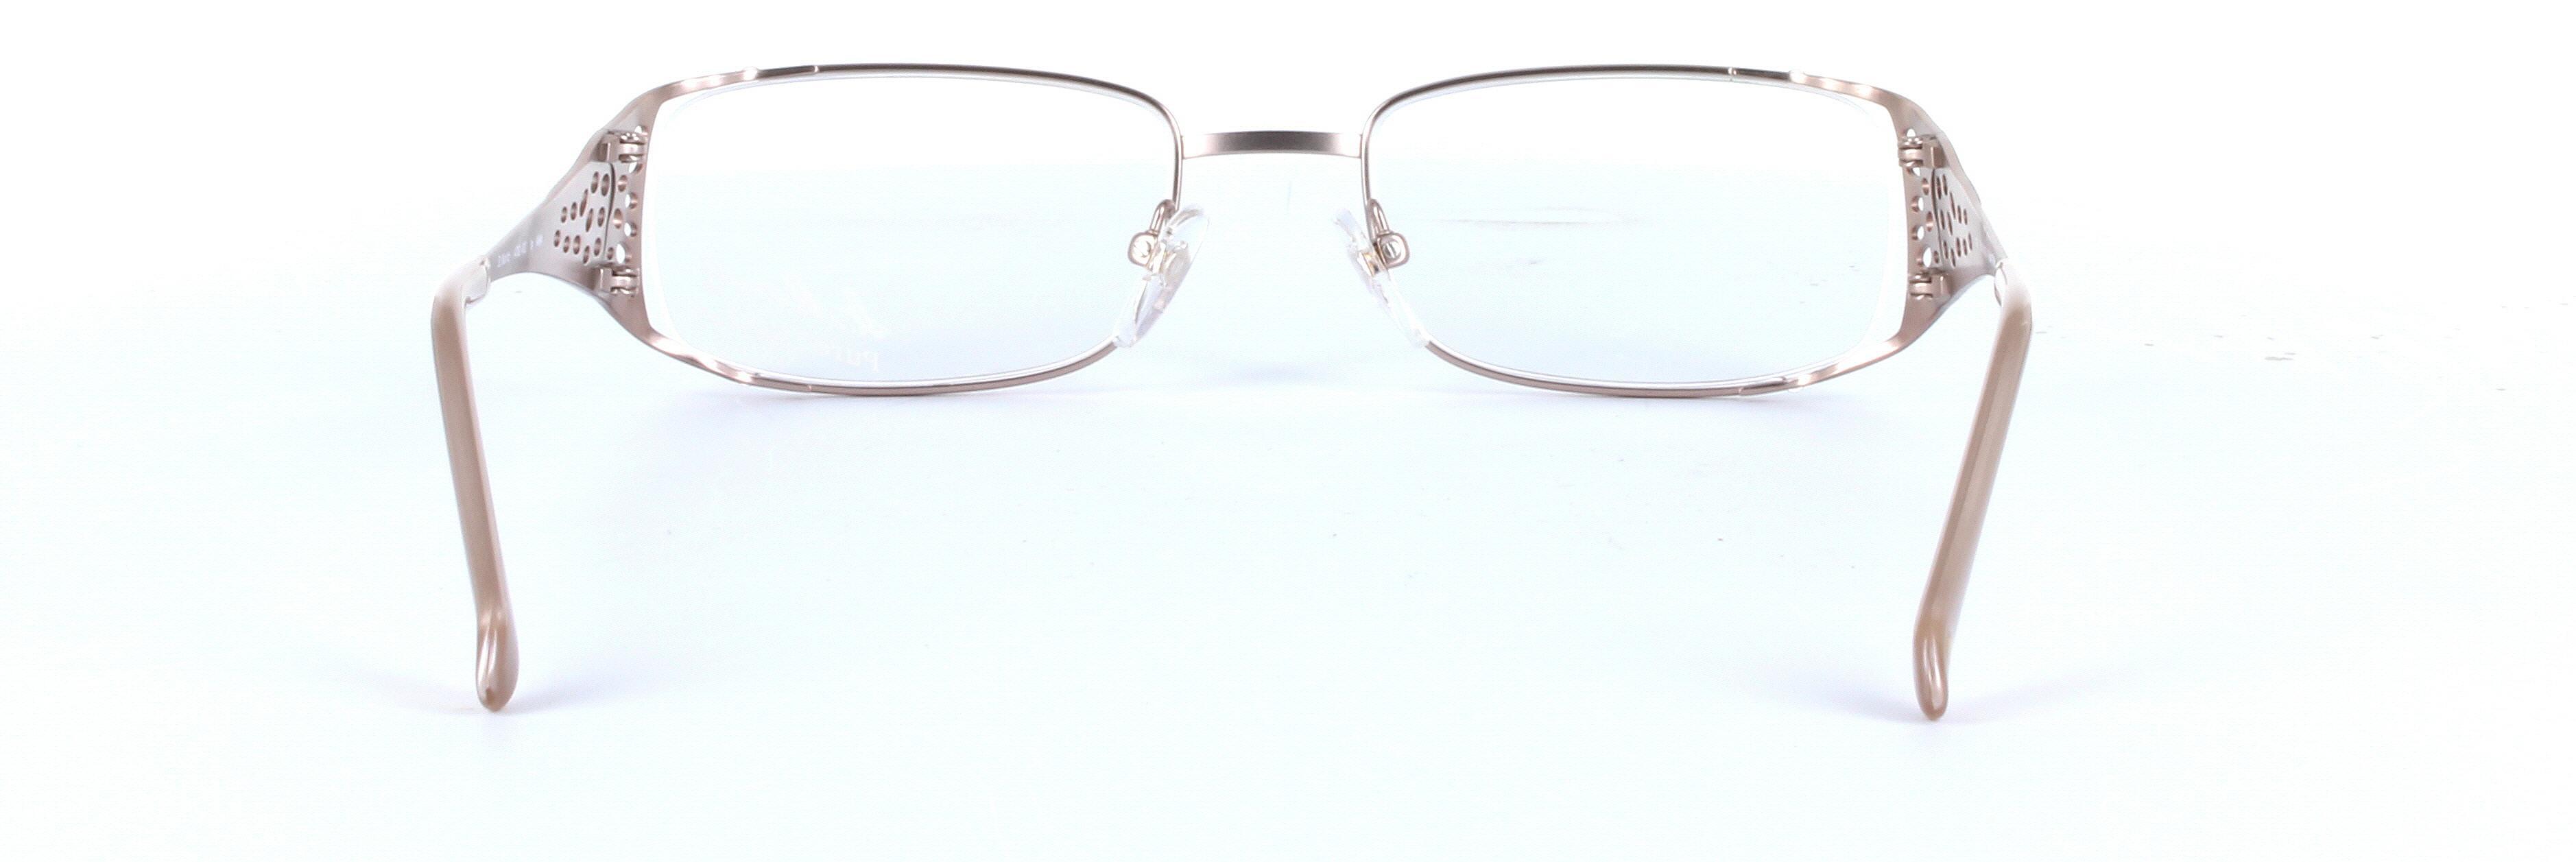 L'ART St-MORITZ (4782-002) Brown Full Rim Rectangular Metal Glasses - Image View 3